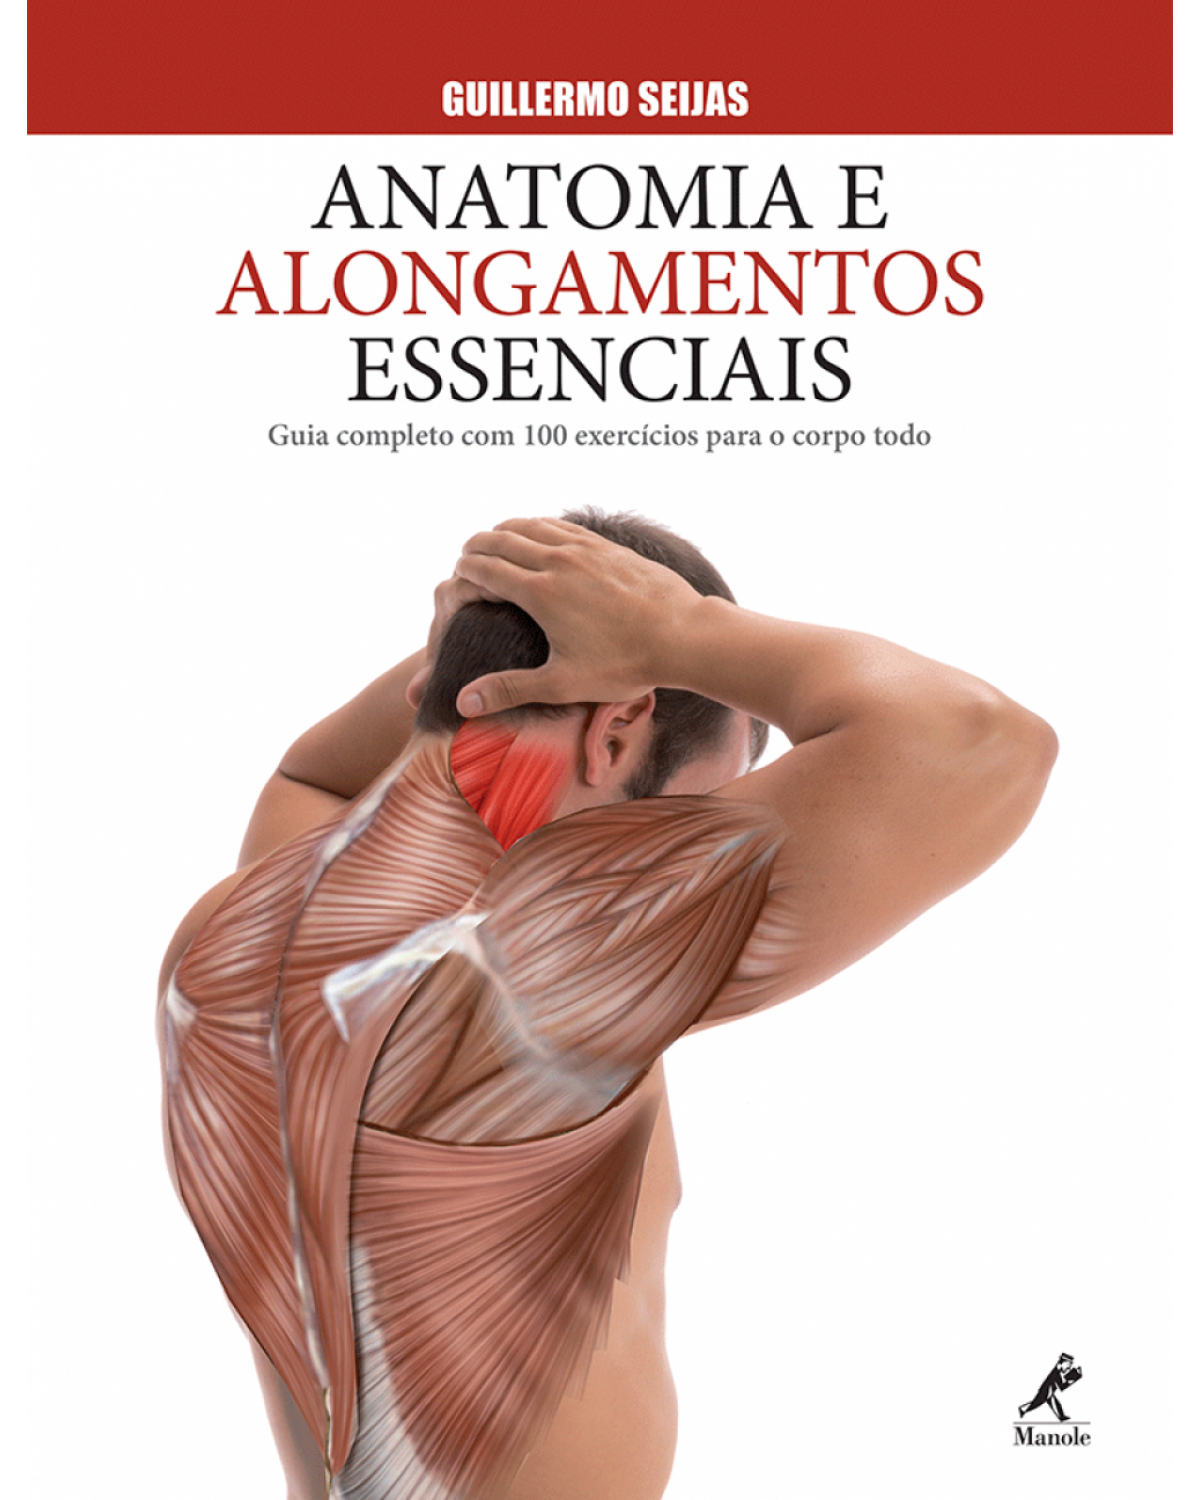 Anatomia e alongamentos essenciais - Guia completo com 100 exercícios para o corpo todo - 1ª Edição | 2015